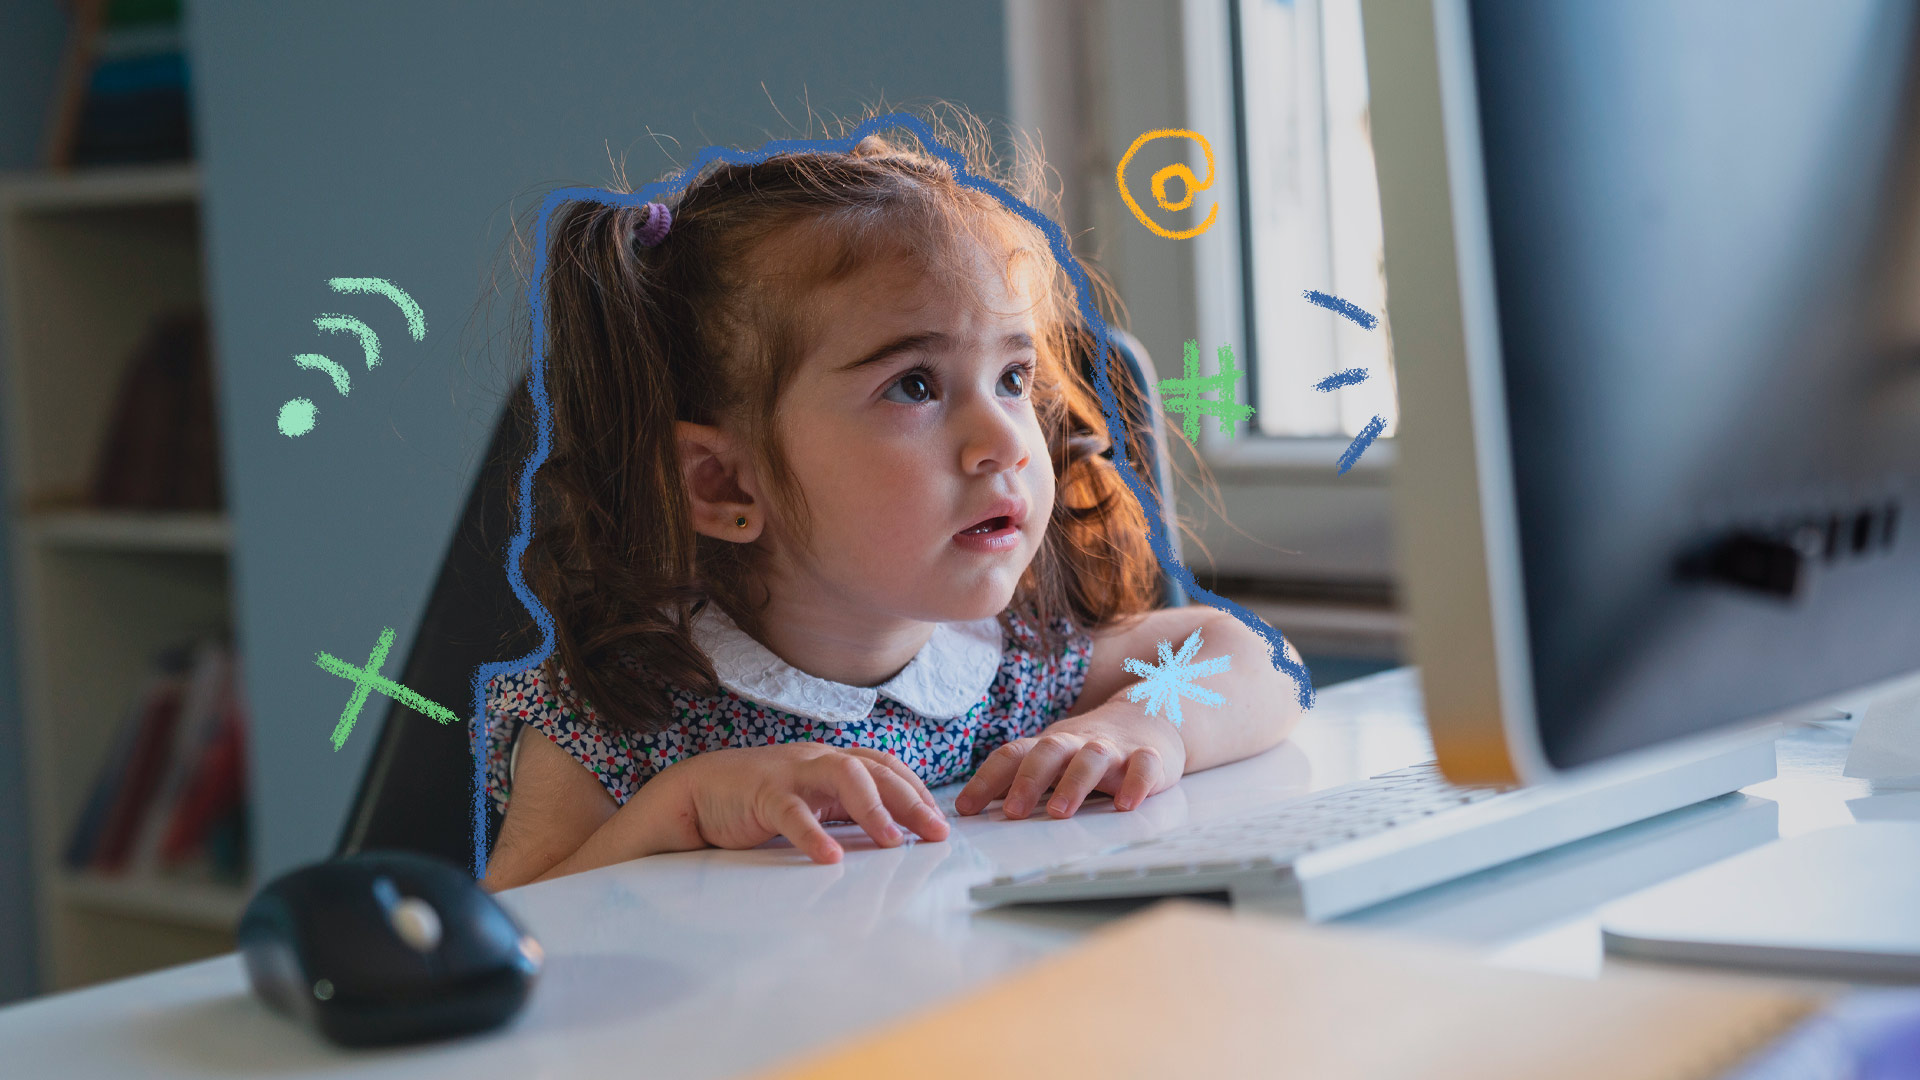 Imagem de uma menina com cabelos amarrados e divididos nas laterais está sentada em uma mesa mexendo em um computador, atenta. Texto sobre crianças e internet